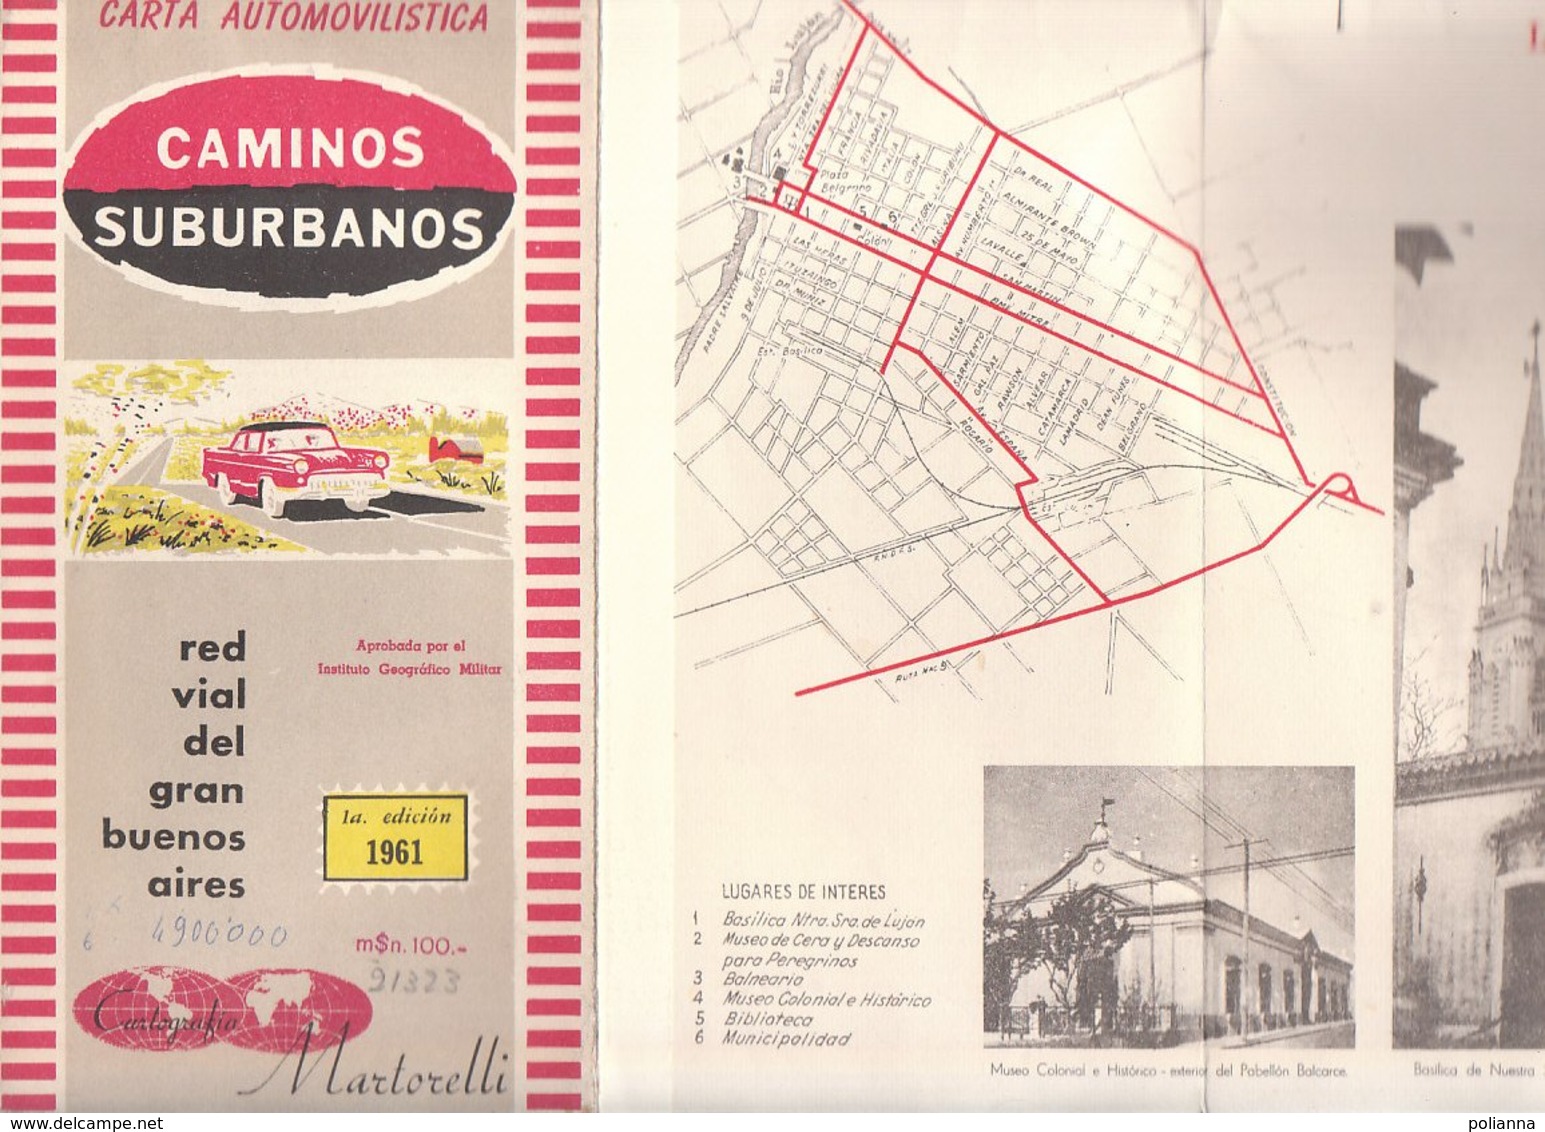 B1968 - MAP - CARTINA - CARTA AUTOMOBILISTICA RED VIAL DEL GRAN BUENOS AIRES Cartografia Martorelli 1961 - Cartes Routières